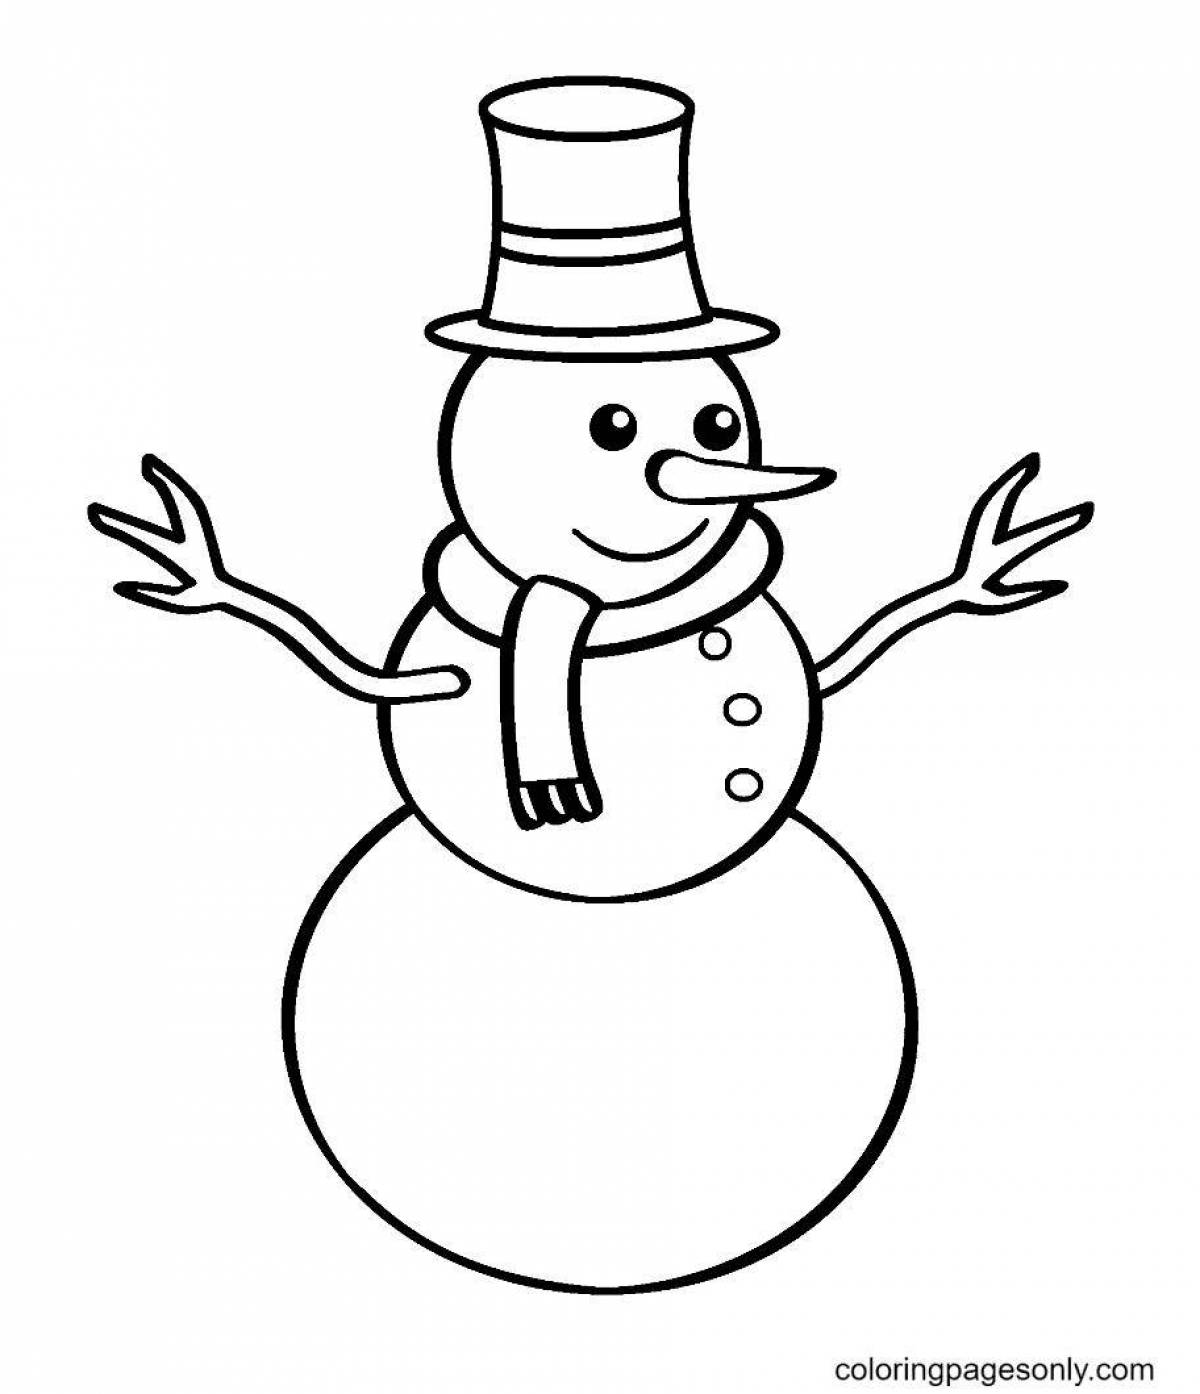 Живая раскраска снеговик для детей